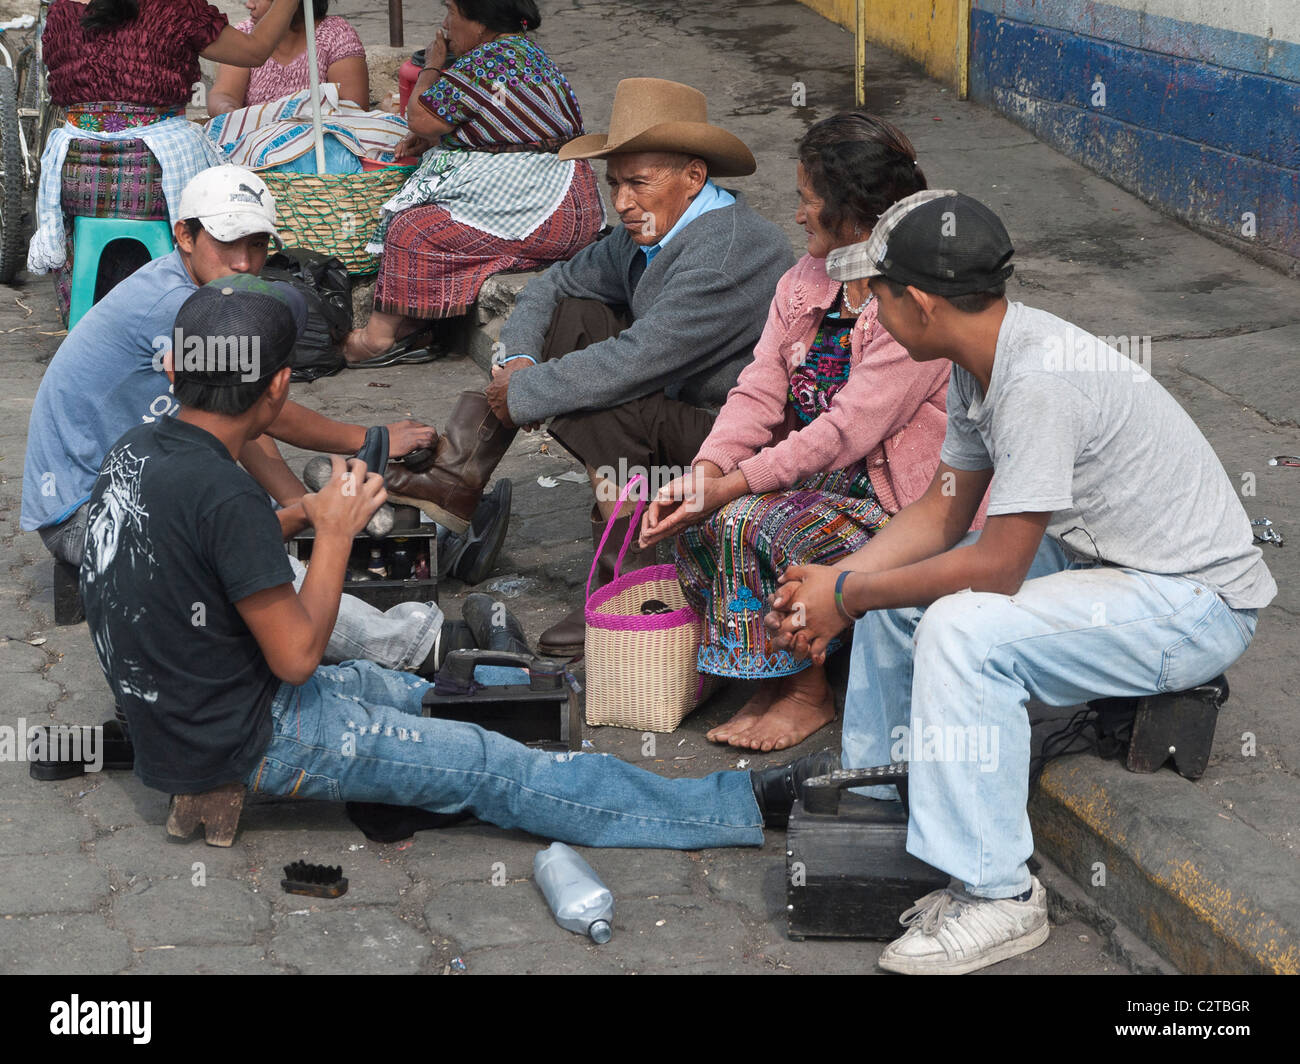 Un homme âgé a ses chaussures brillaient sur le trottoir tandis que sa femme regarde à Antigua, Guatemala. Banque D'Images